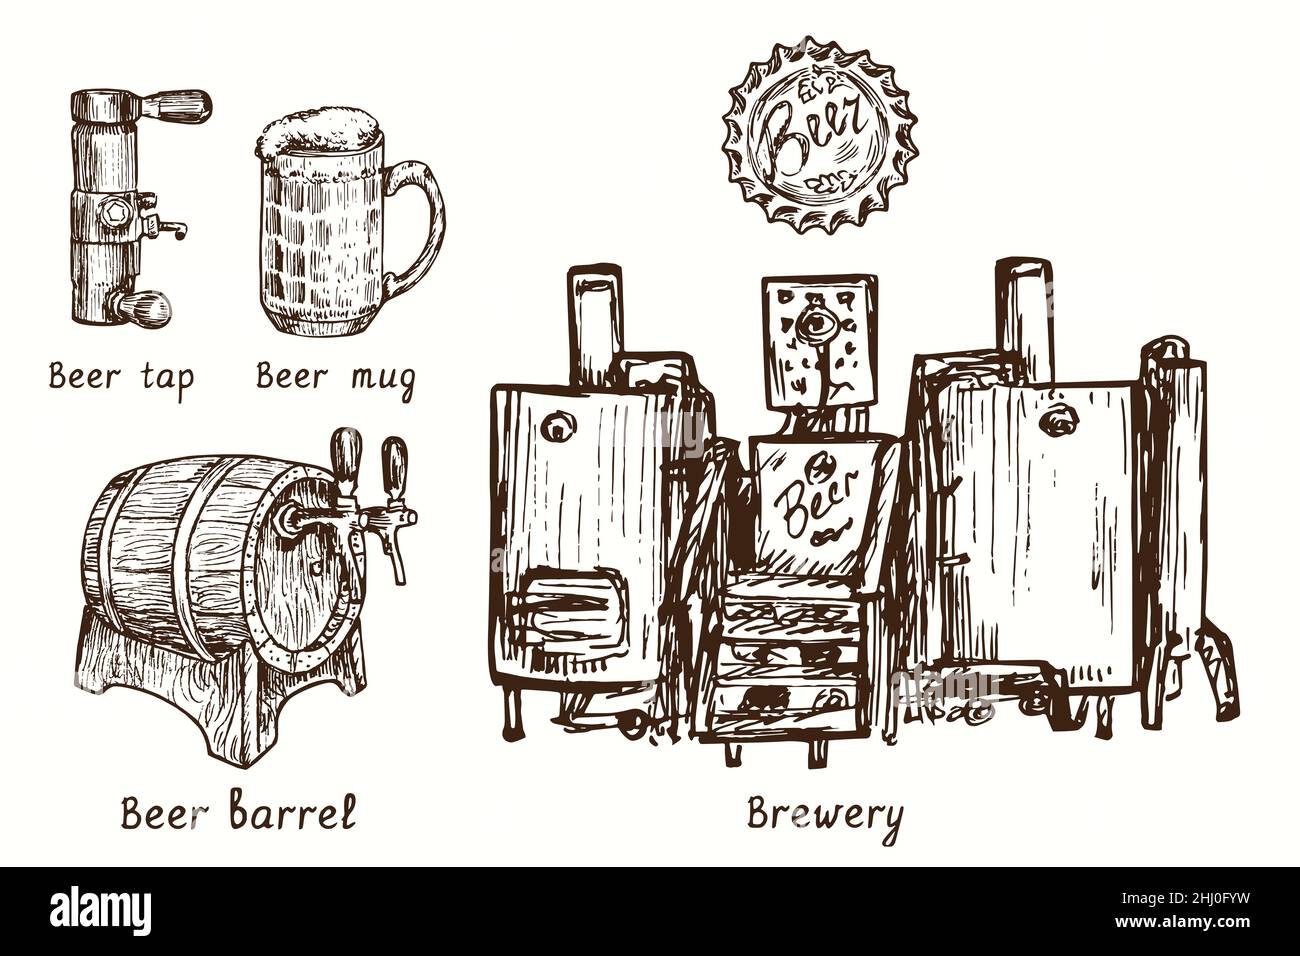 Sammlung von Bierbrauereien. Bierzapfen, Becher, Fass, Flaschenverschluss, Brauerei. Tusche schwarz-weiße Doodle Zeichnung im Holzschnitt-Stil. Stockfoto